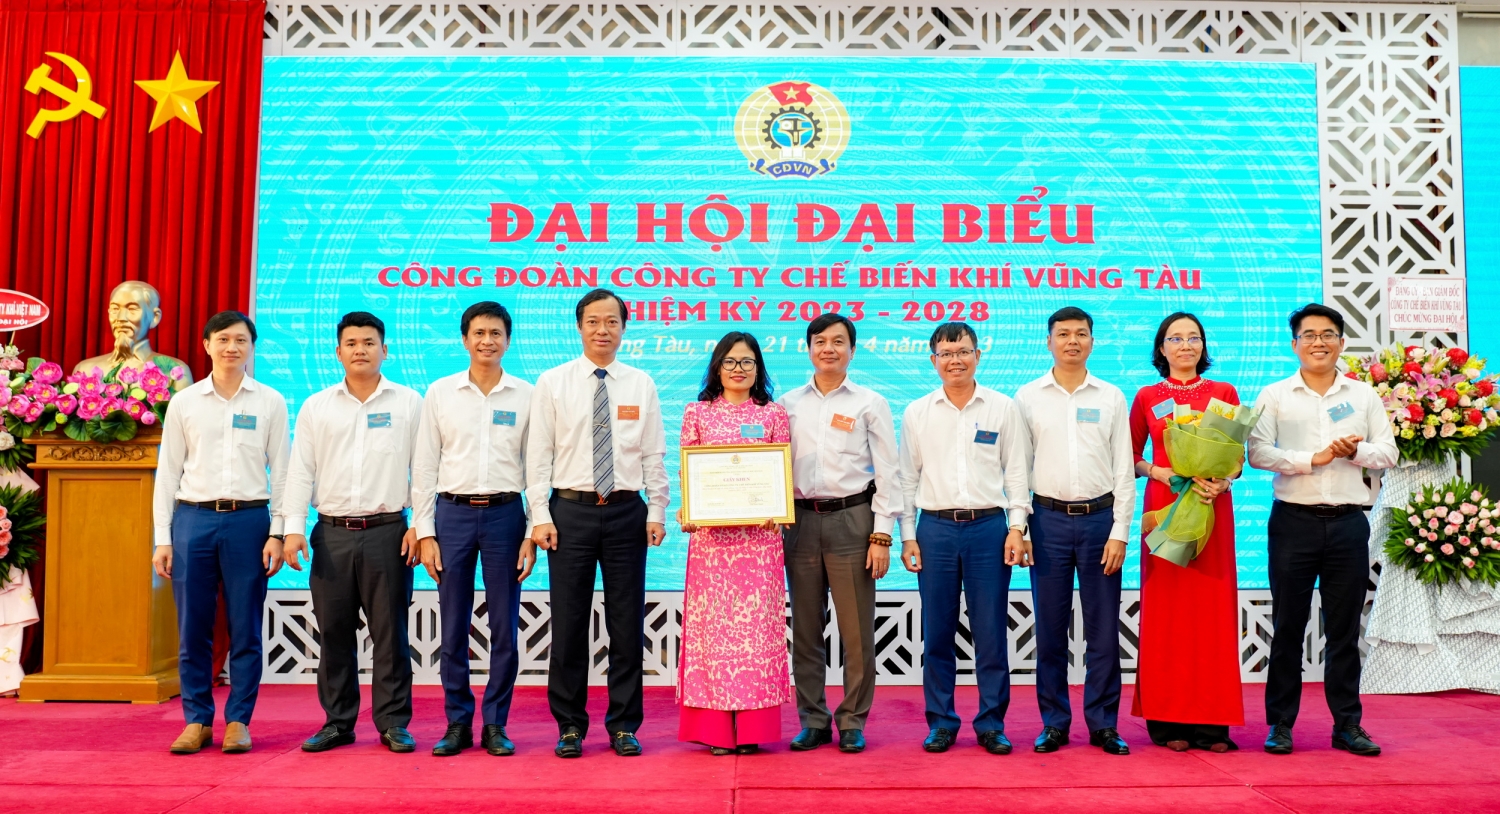 Công đoàn PV GAS trao khen thưởng cho tập thể Công đoàn Công ty Chế biến Khí Vũng Tàu – đơn vị xuất sắc trong nhiệm kỳ 2018-2023